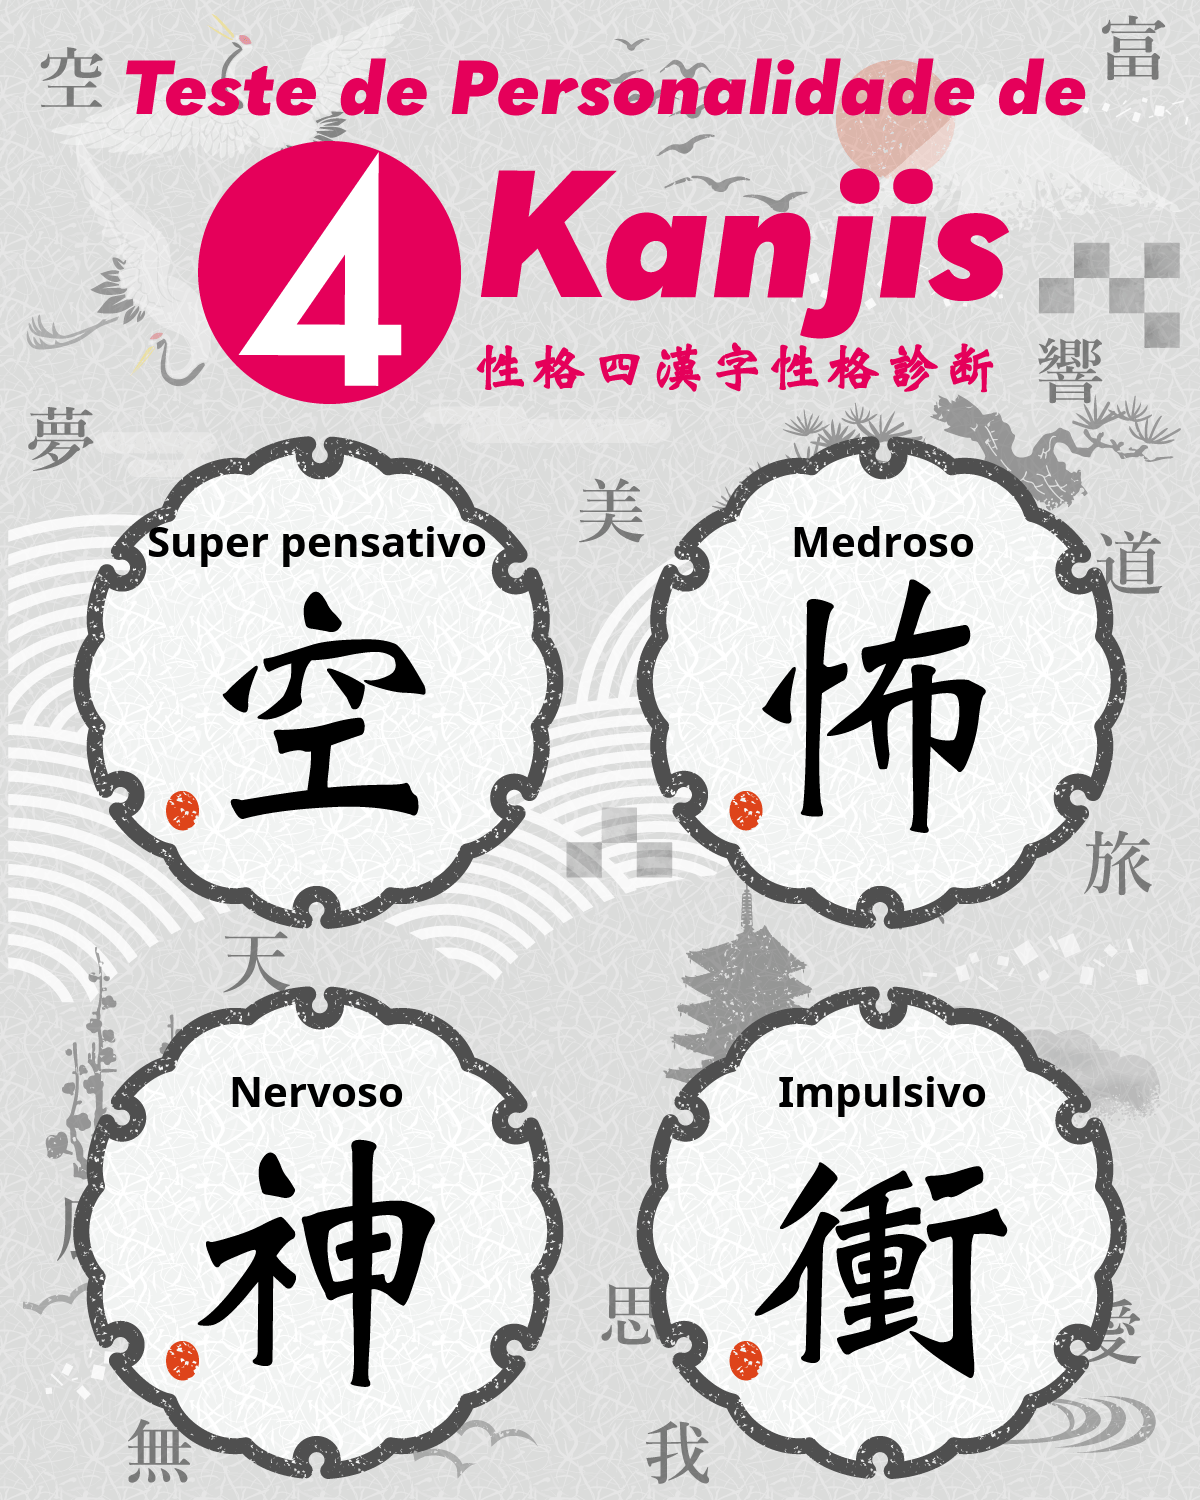 Teste de Personalidade de 4 Kanjis | Que quatro caracteres Kanji descrevem sua personalidade?